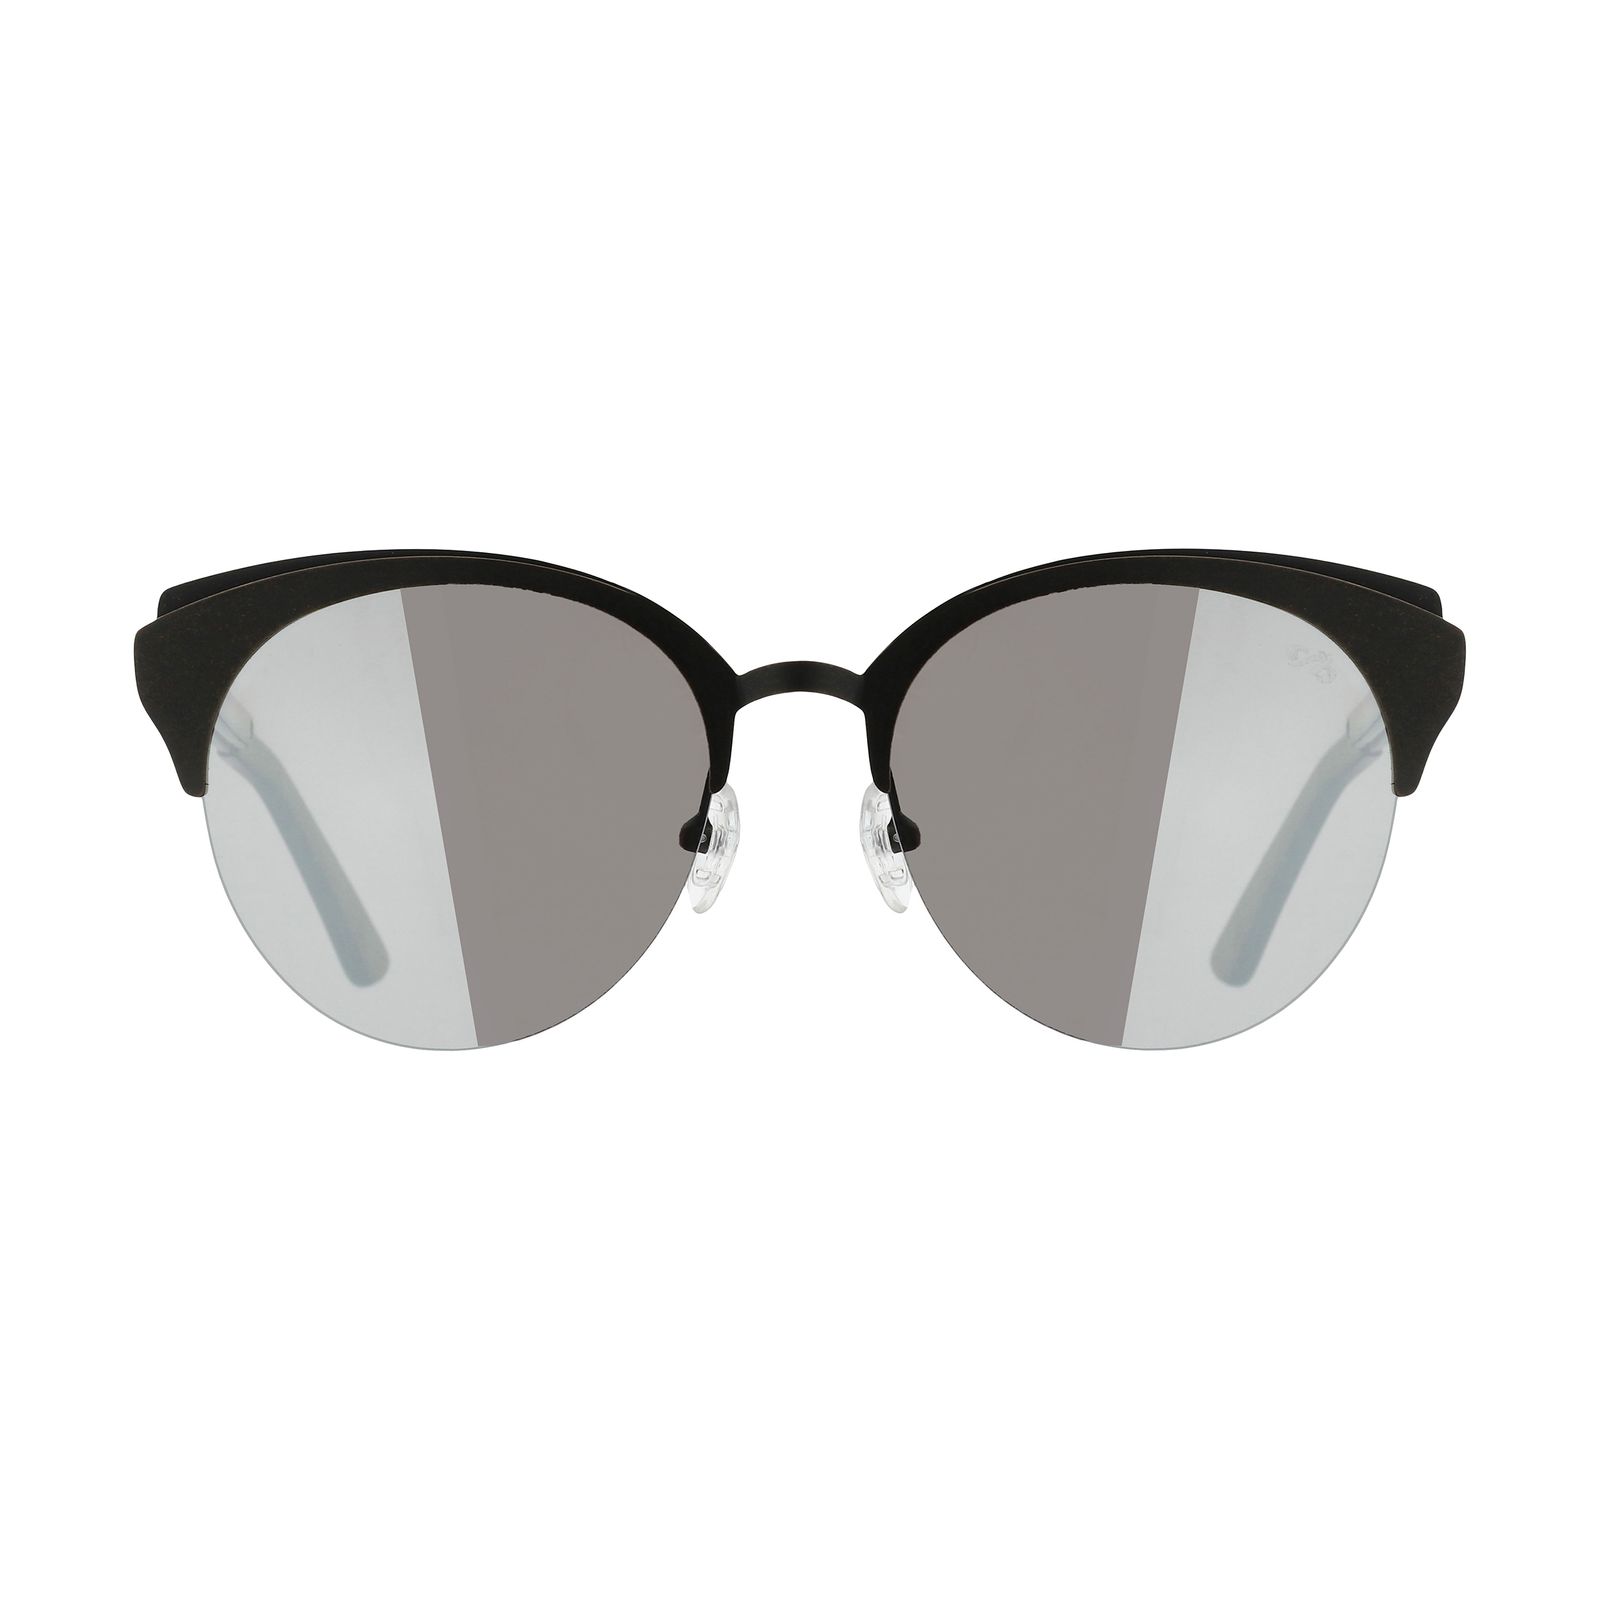 عینک آفتابی زنانه چیلی بینز مدل 2555 dbr -  - 1